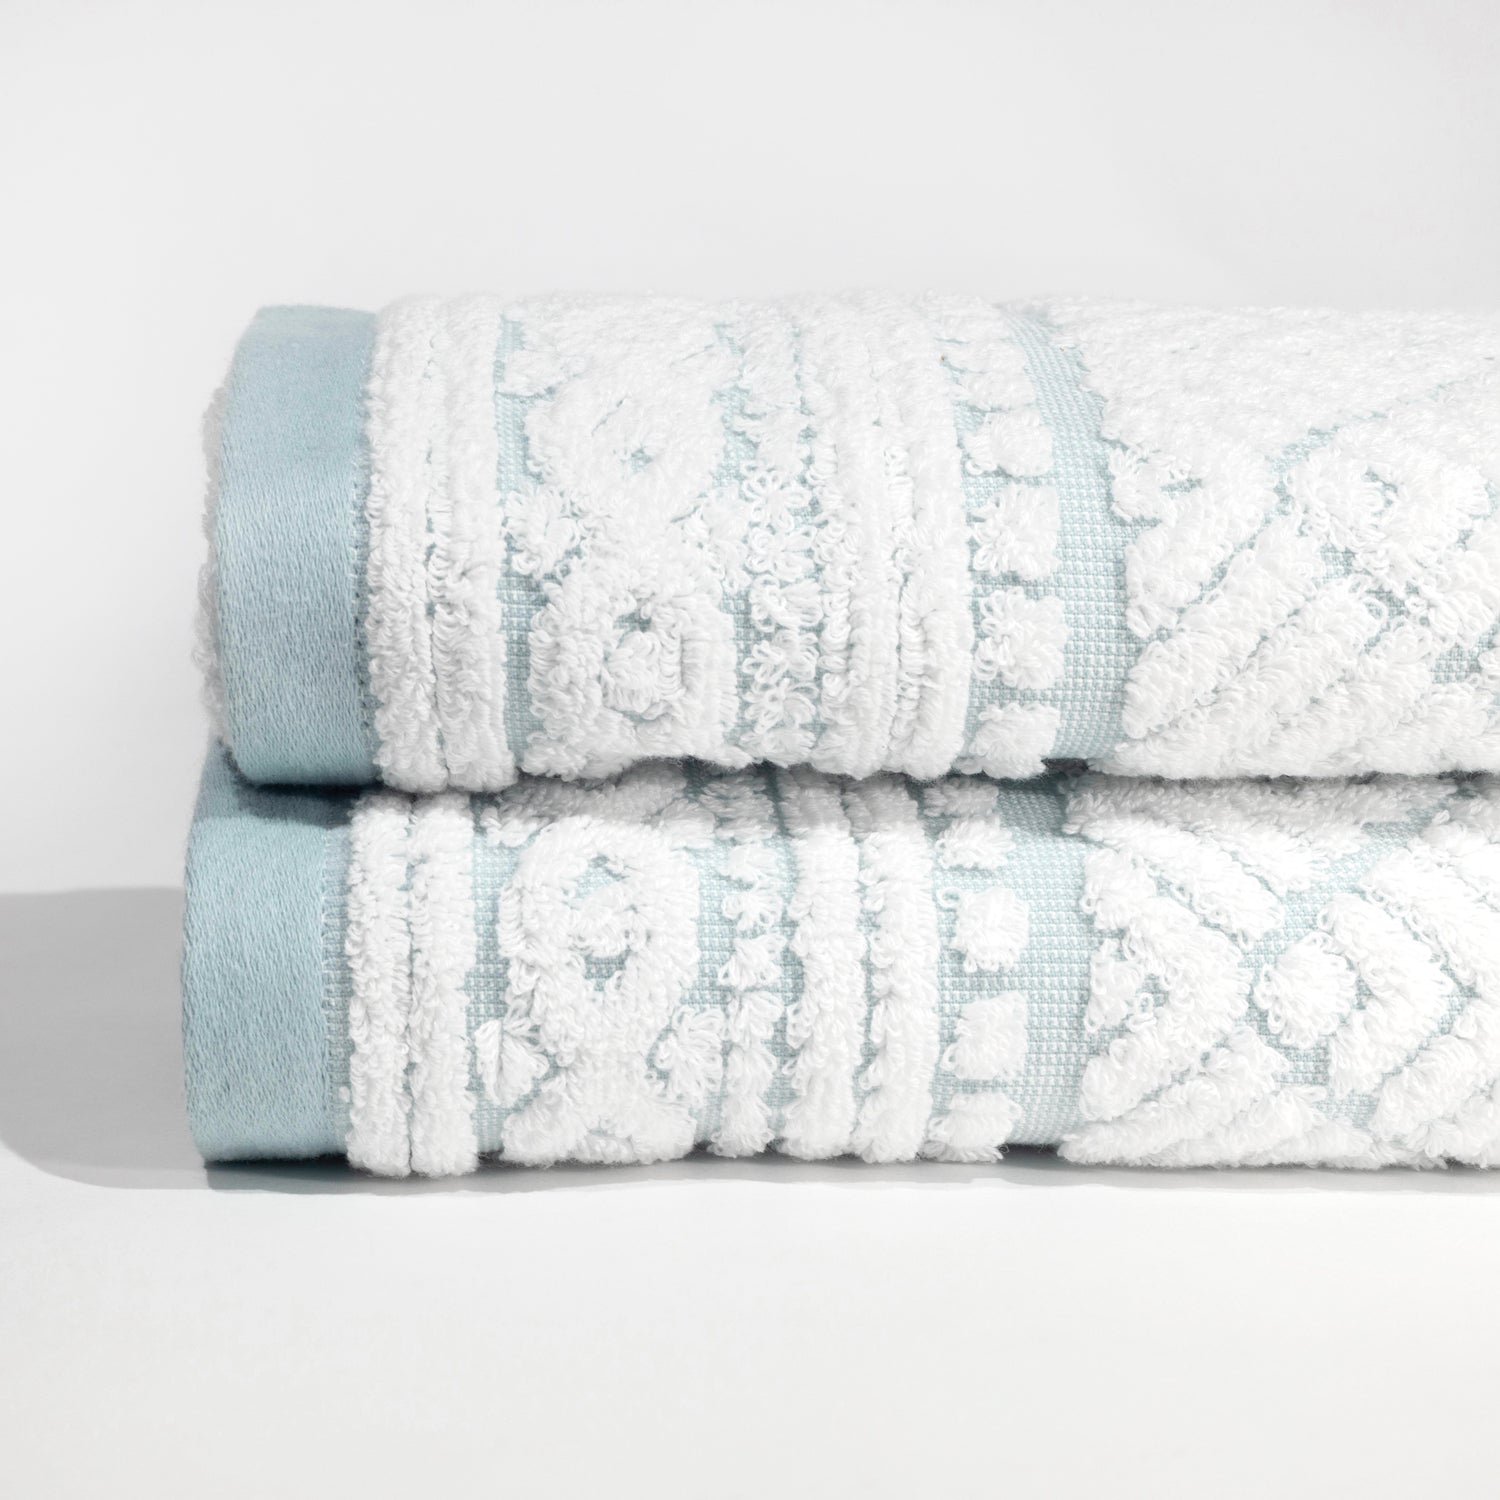 Turkish Towel - Gentle Planet 6-piece Hand Towel Set